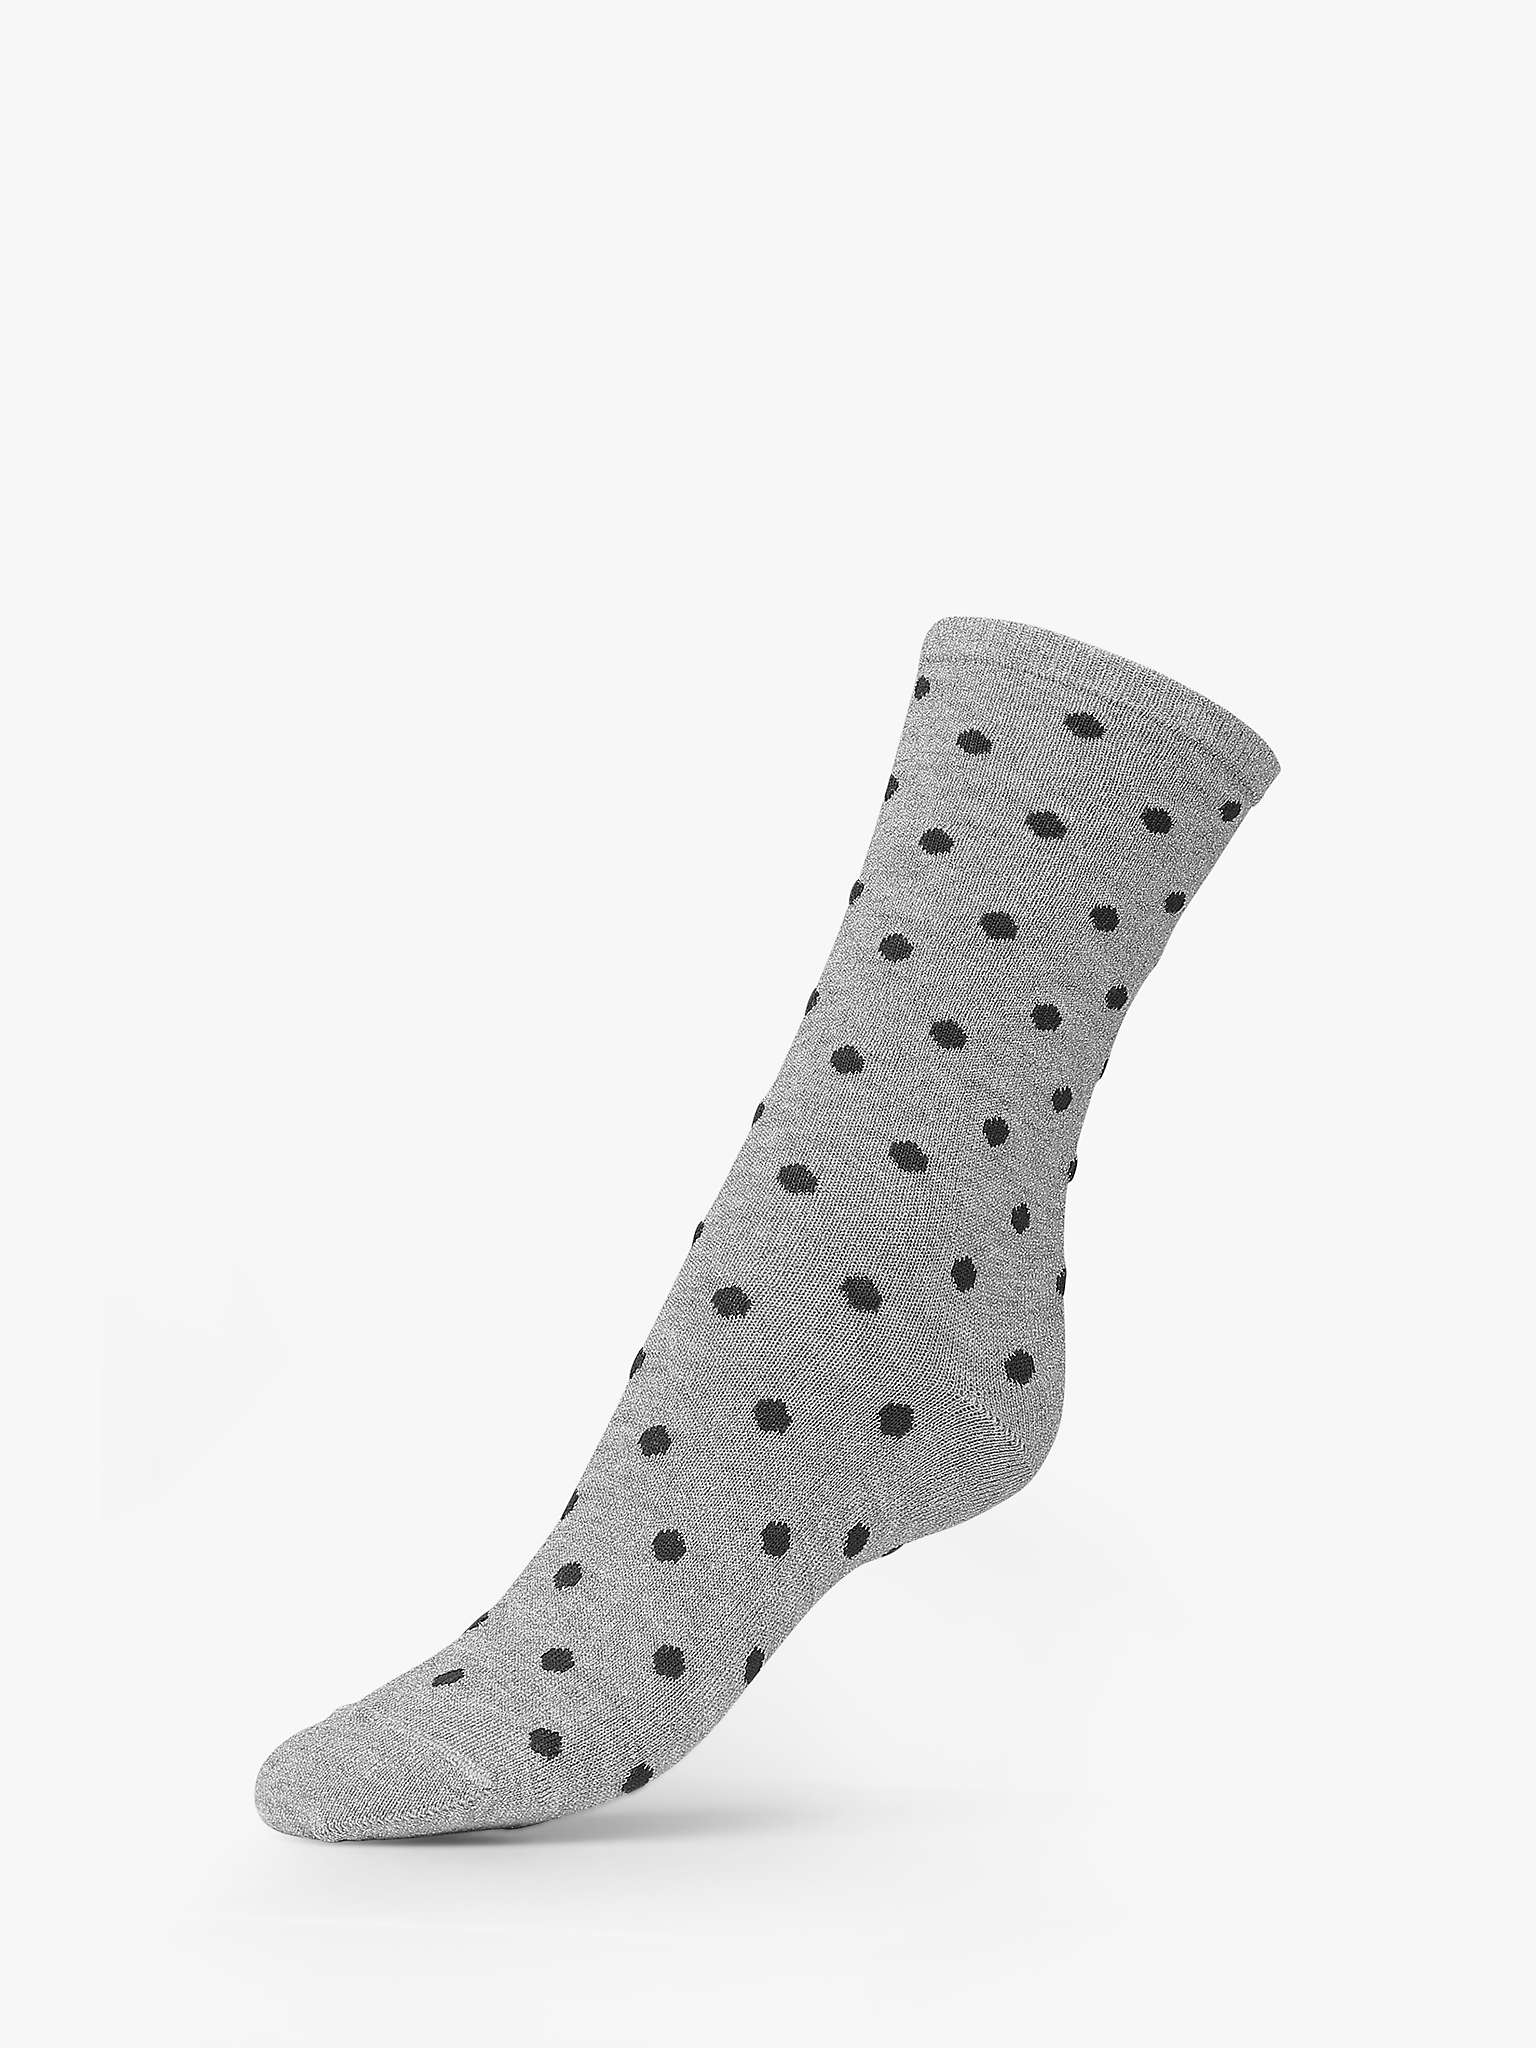 Buy Dear Denier Mei Plain and Dot Print Ankle Socks, Pack of 2 Online at johnlewis.com